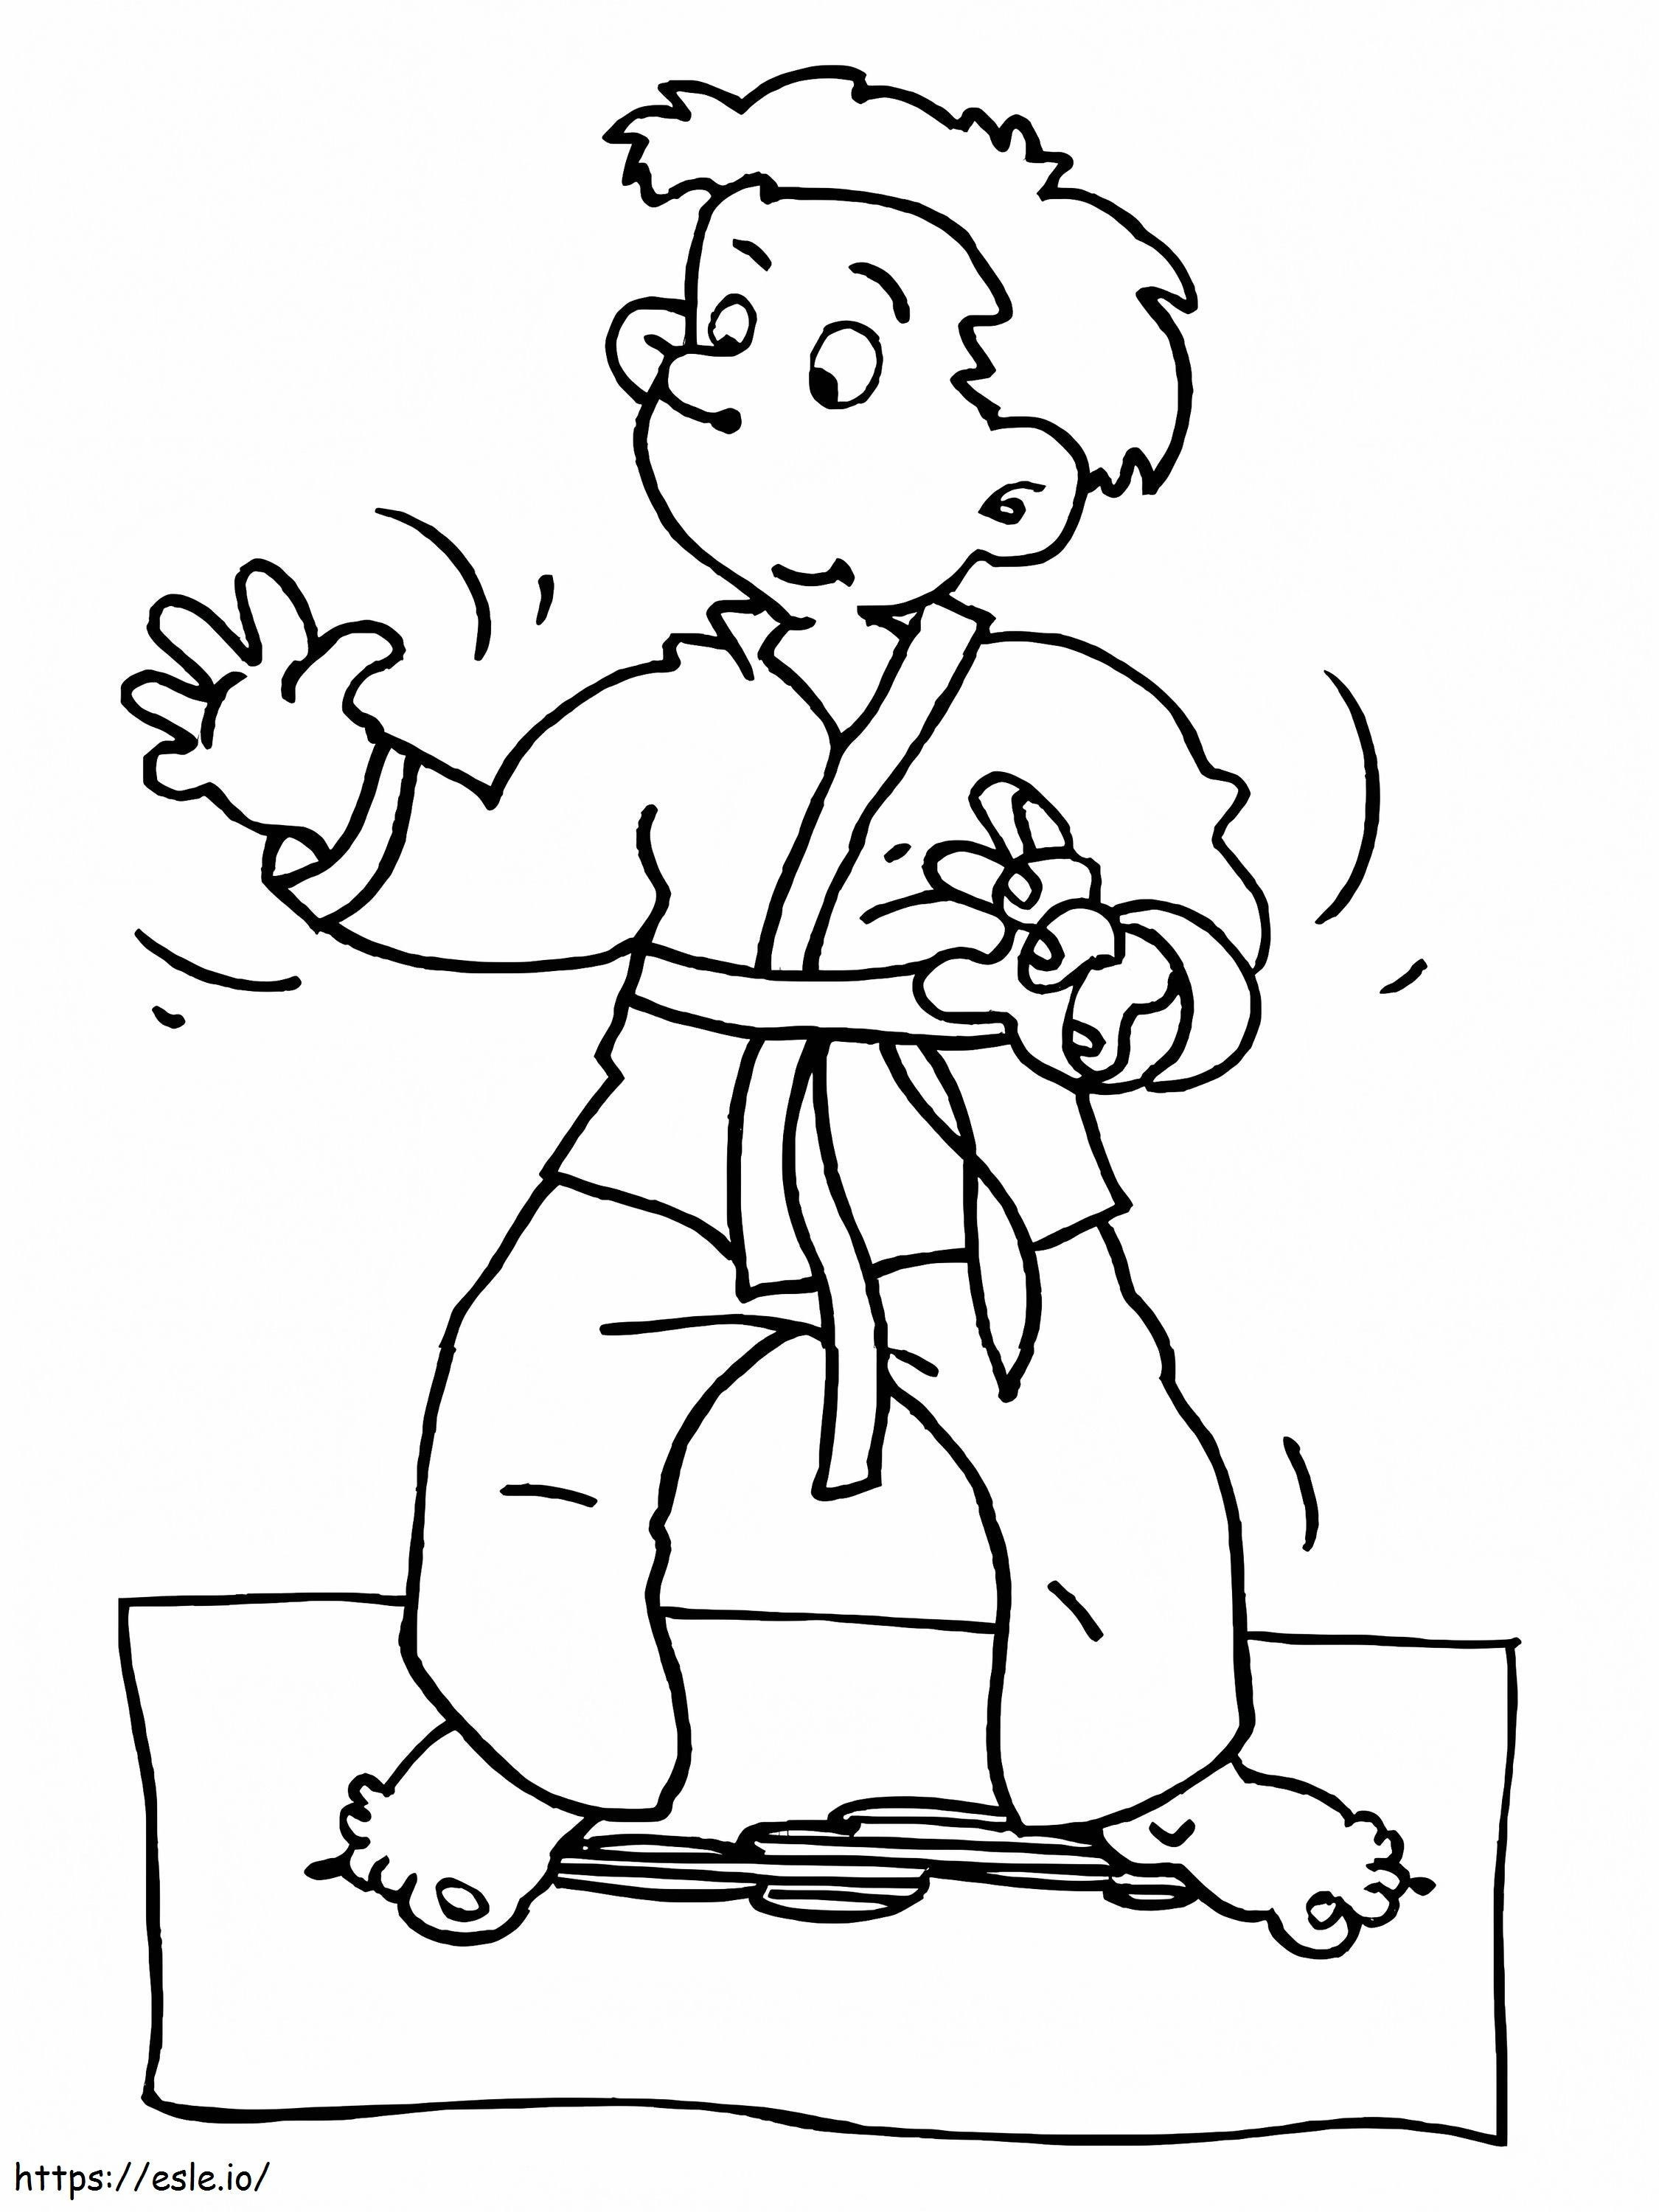 Karate öğrenen çocuk boyama